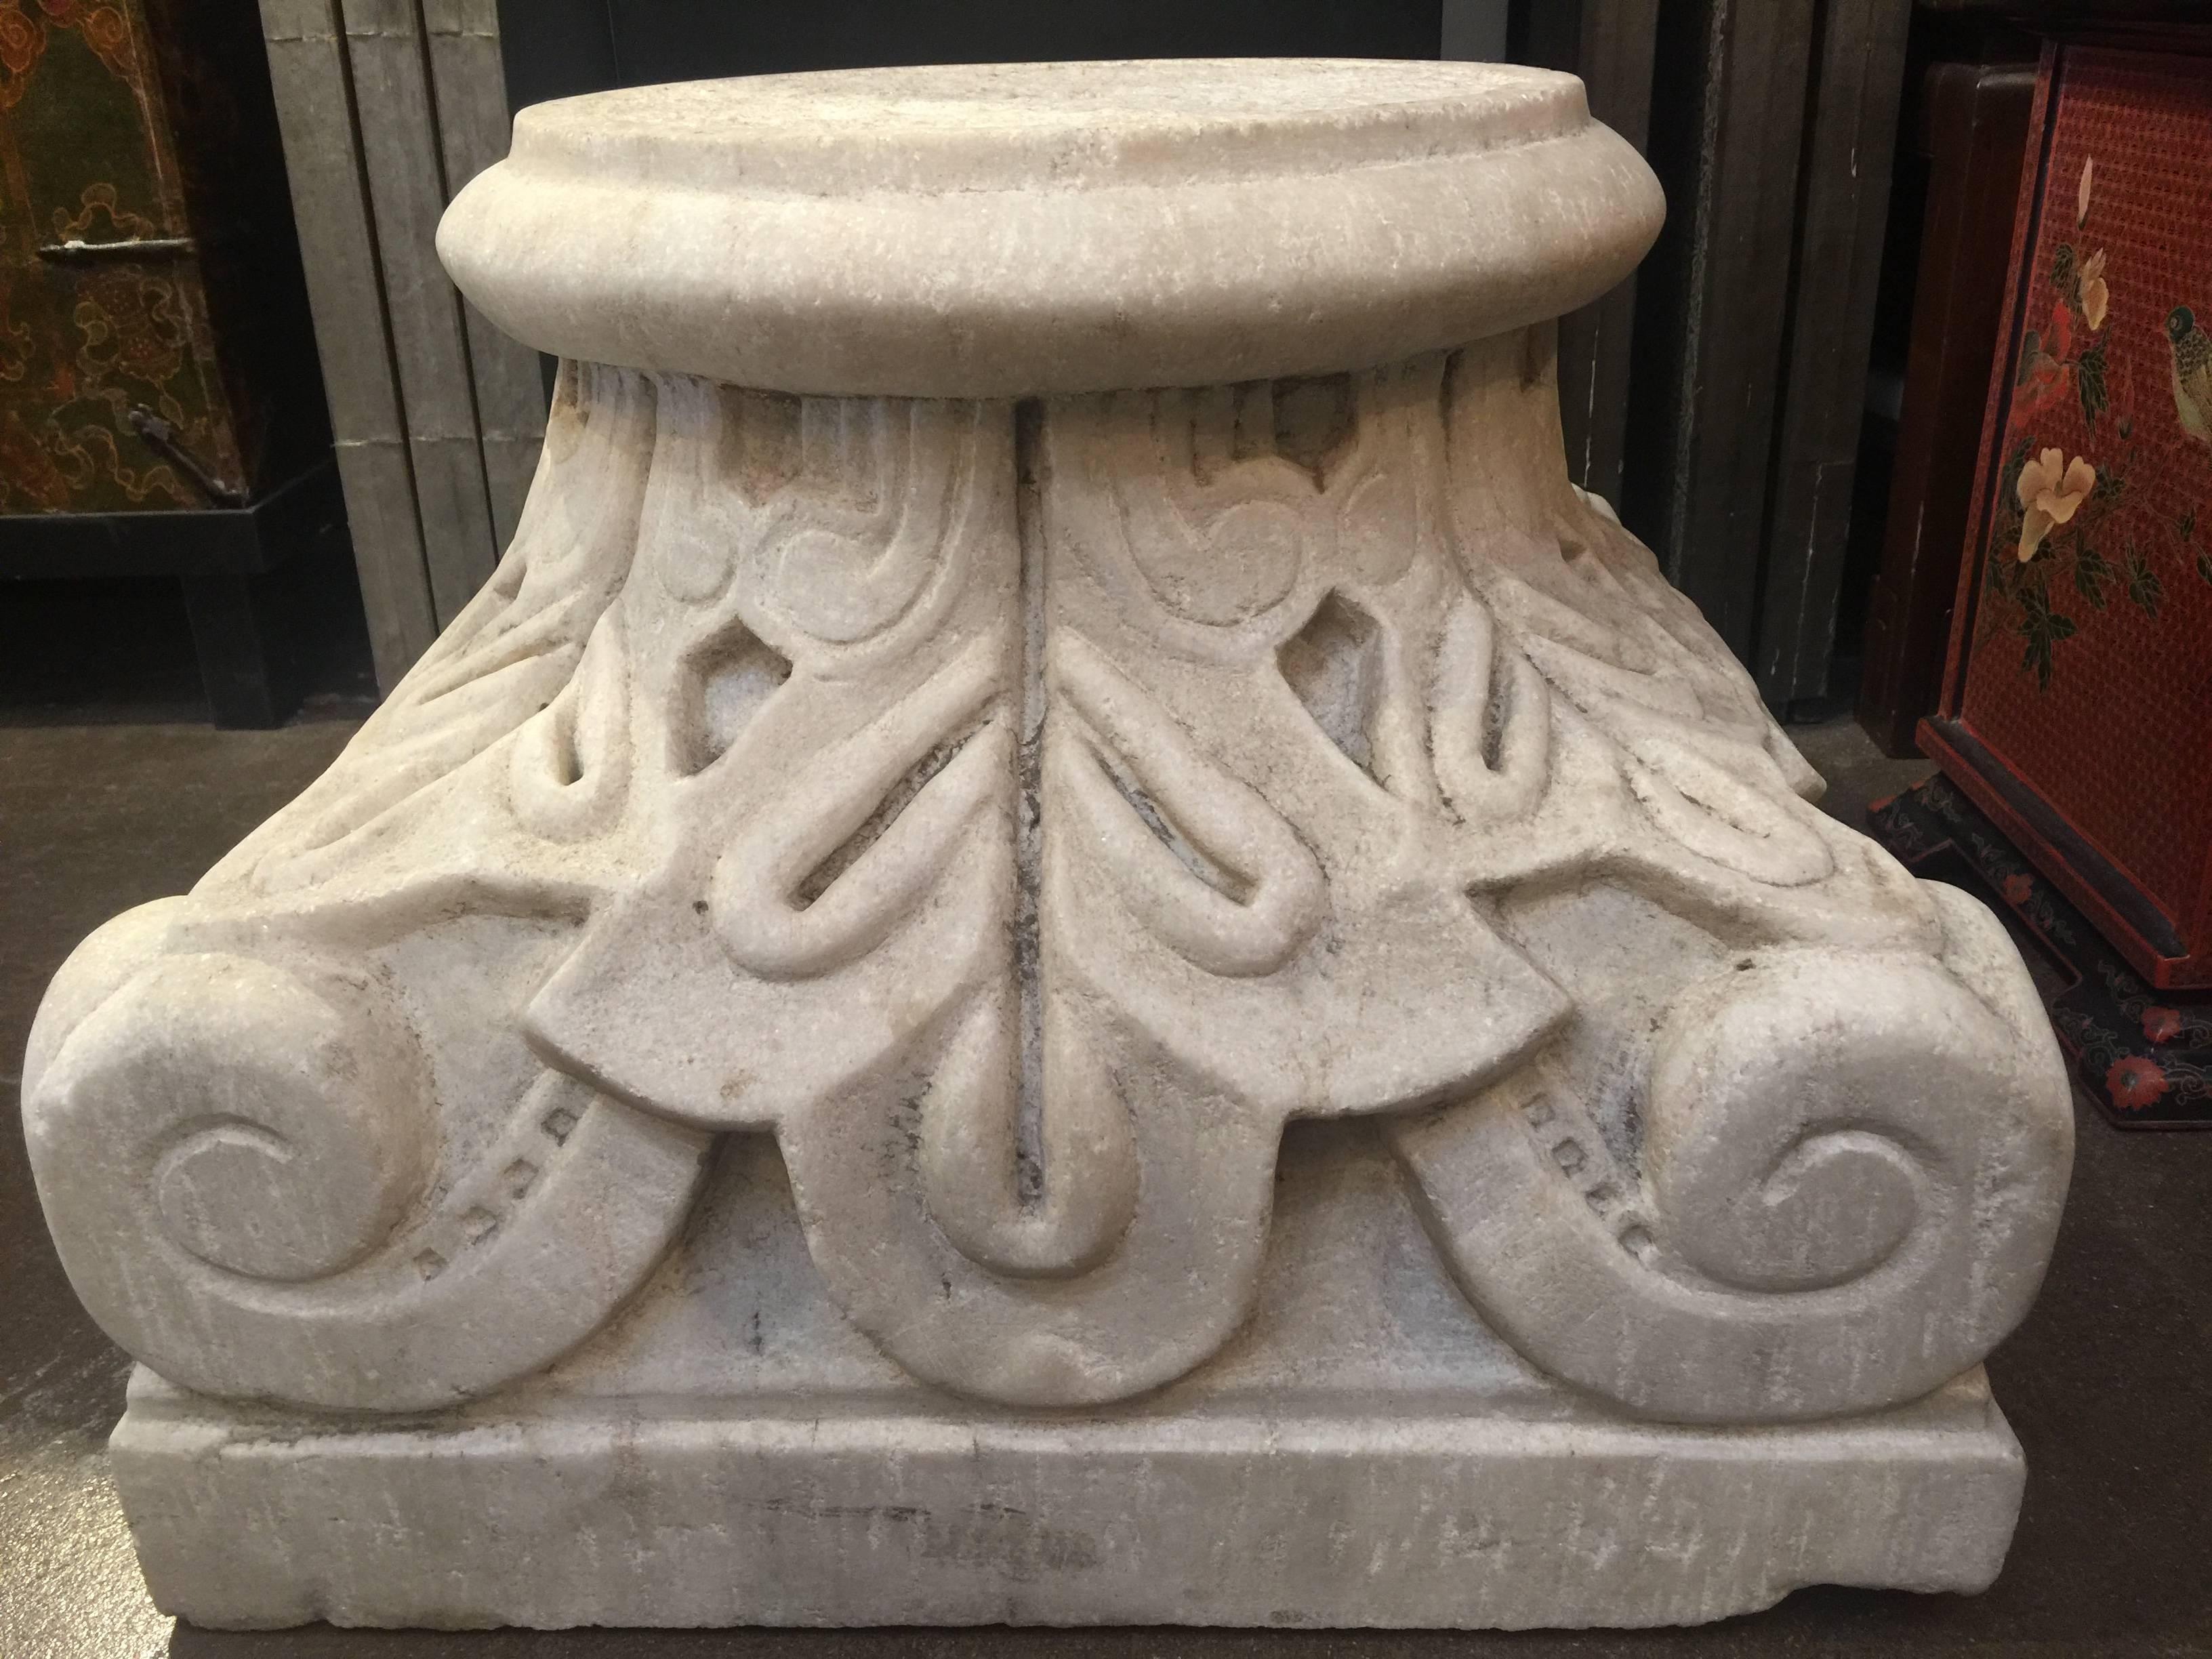 Ein stattliches und gut geschnitztes korinthisches Säulenkapital aus Marmor, 19. Jahrhundert, Italien.
Präsentiert und angezeigt invertiert, mit einem typischen dekorativen Motiv von Akanthus und Volute.
Perfekt für den Sockel eines